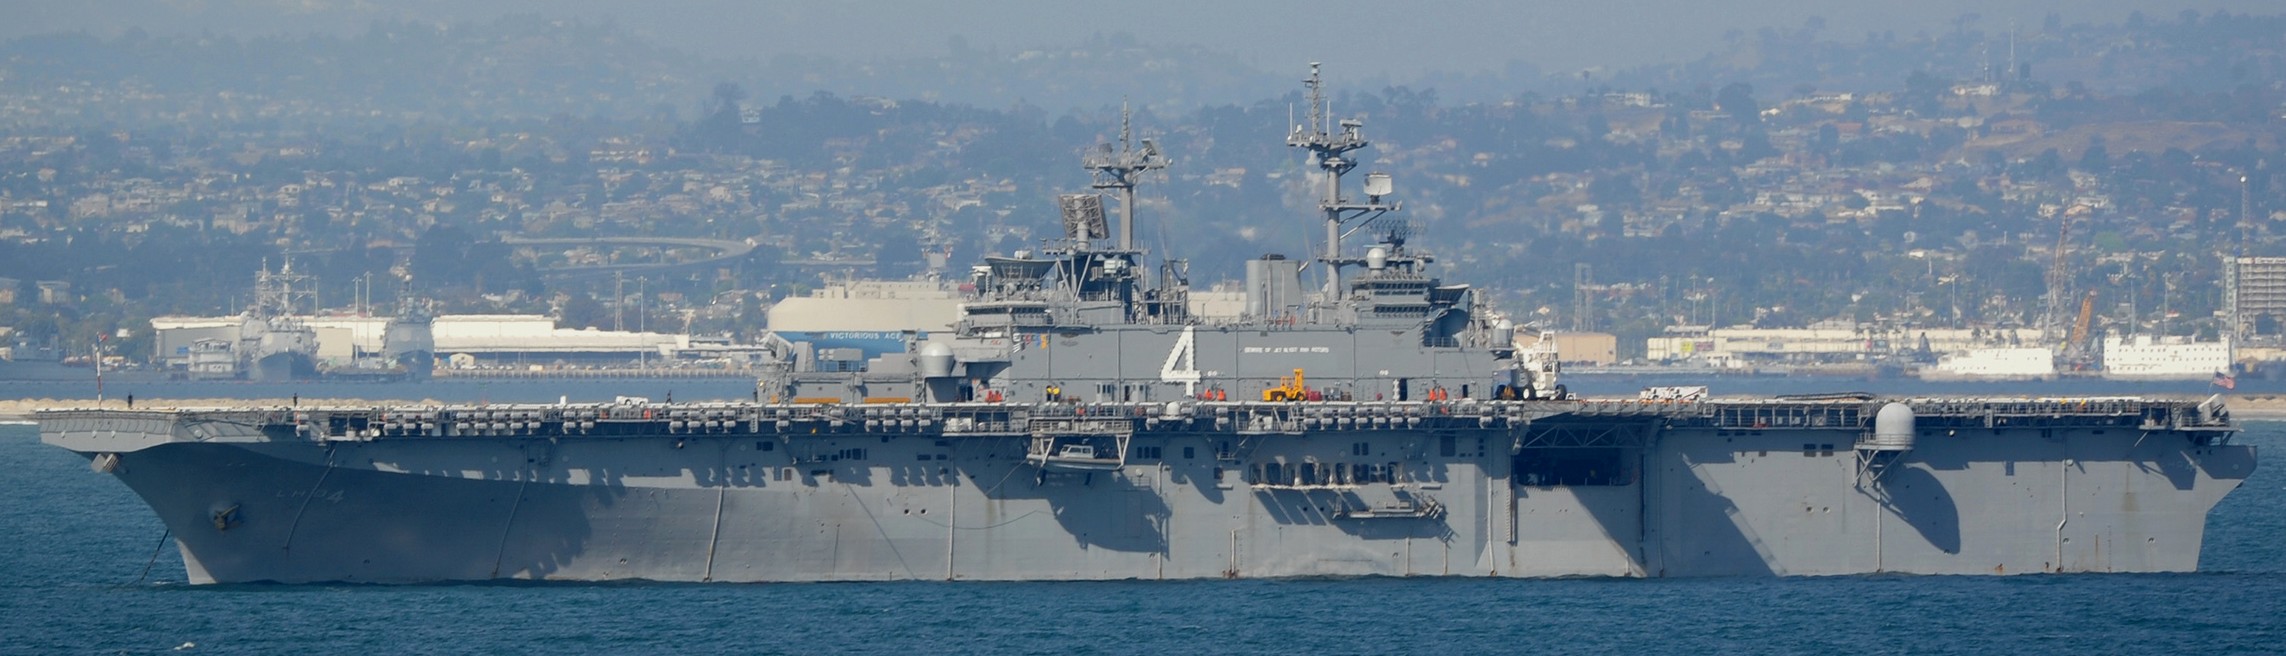 lhd-4 uss boxer wasp class amphibious assault ship dock landing us navy 96